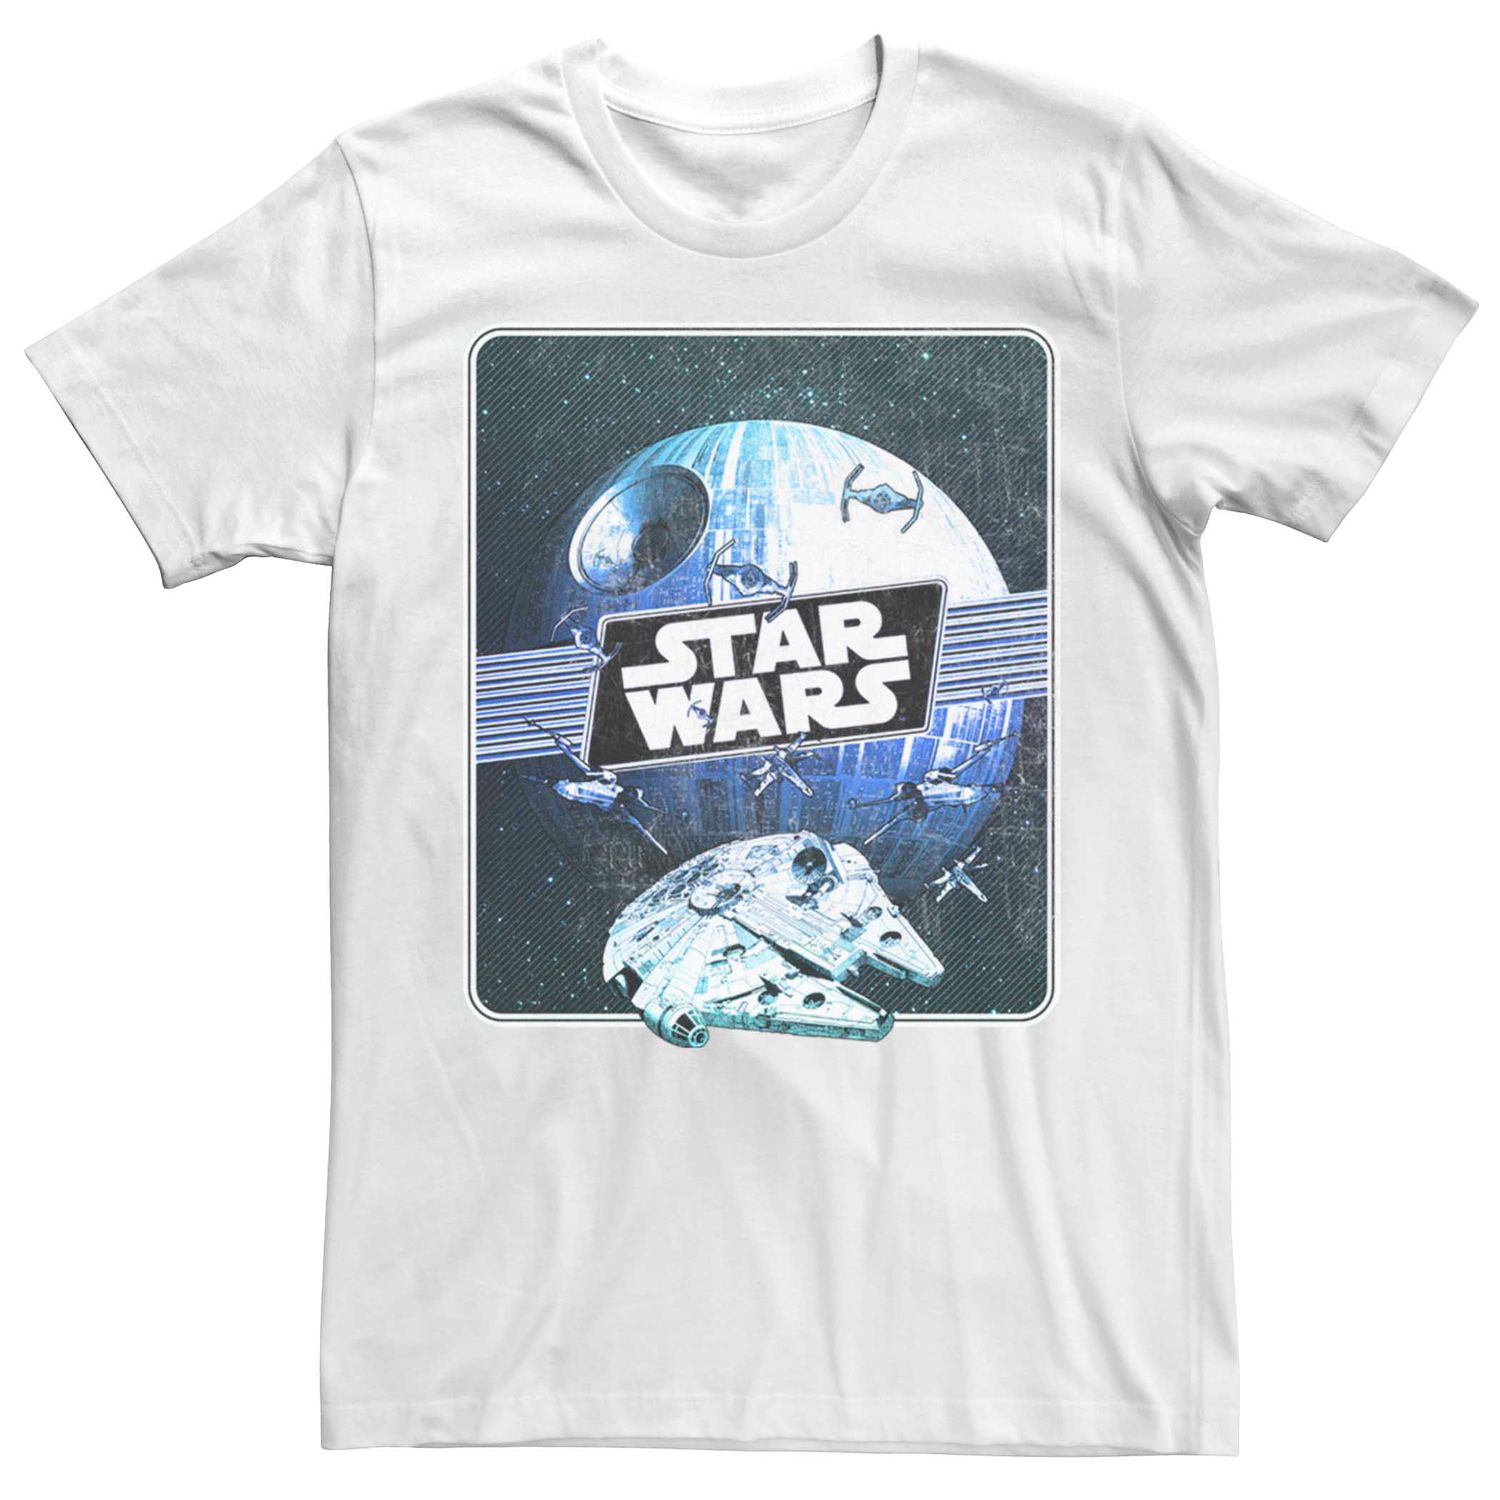 Мужская футболка с графическим плакатом и плакатом «Звездные войны» Licensed Character